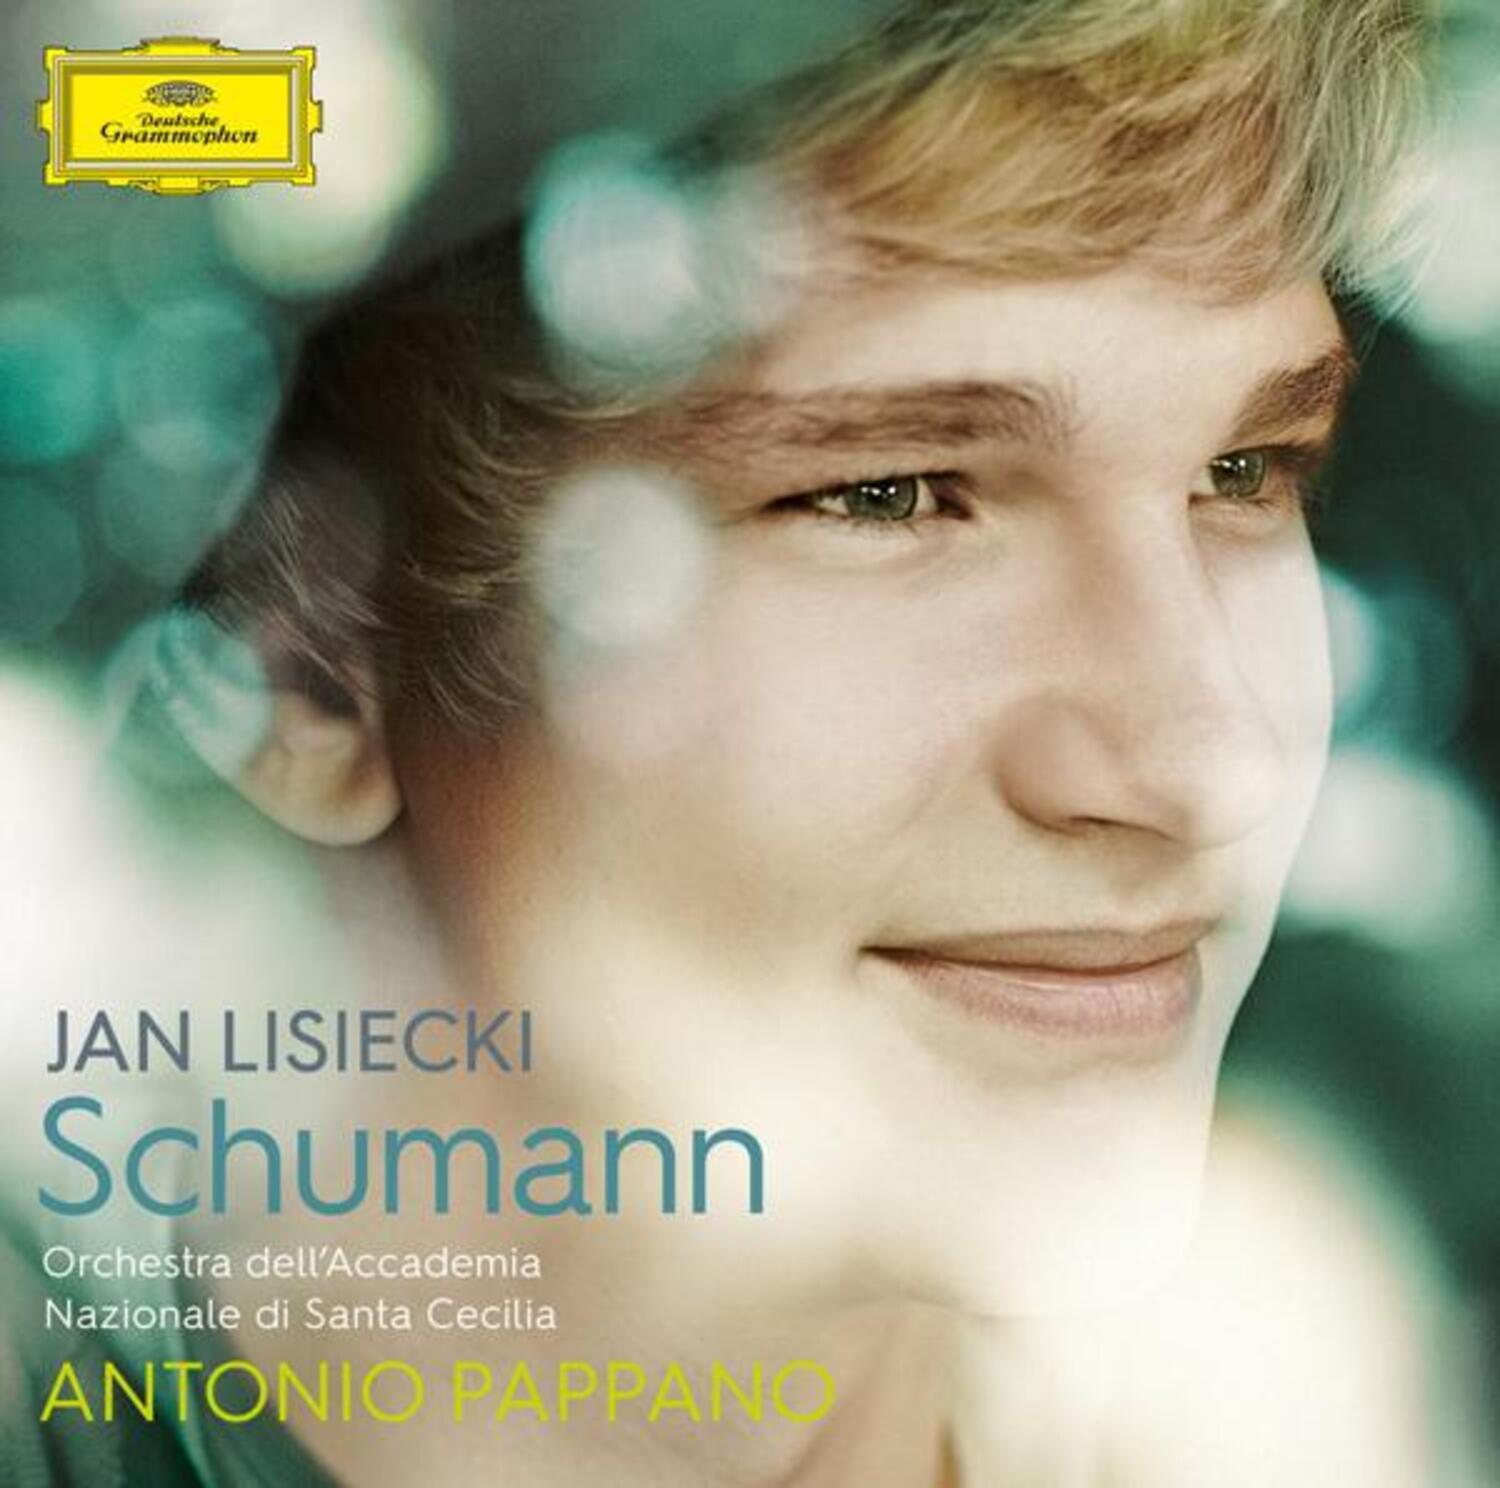 얀 리치에츠키 (Jan Lisiecki) - [슈만 (SCHUMANN) - Piano Concerto in A minor Op. 54 (피아노 협주곡 A단조 OP.54)]